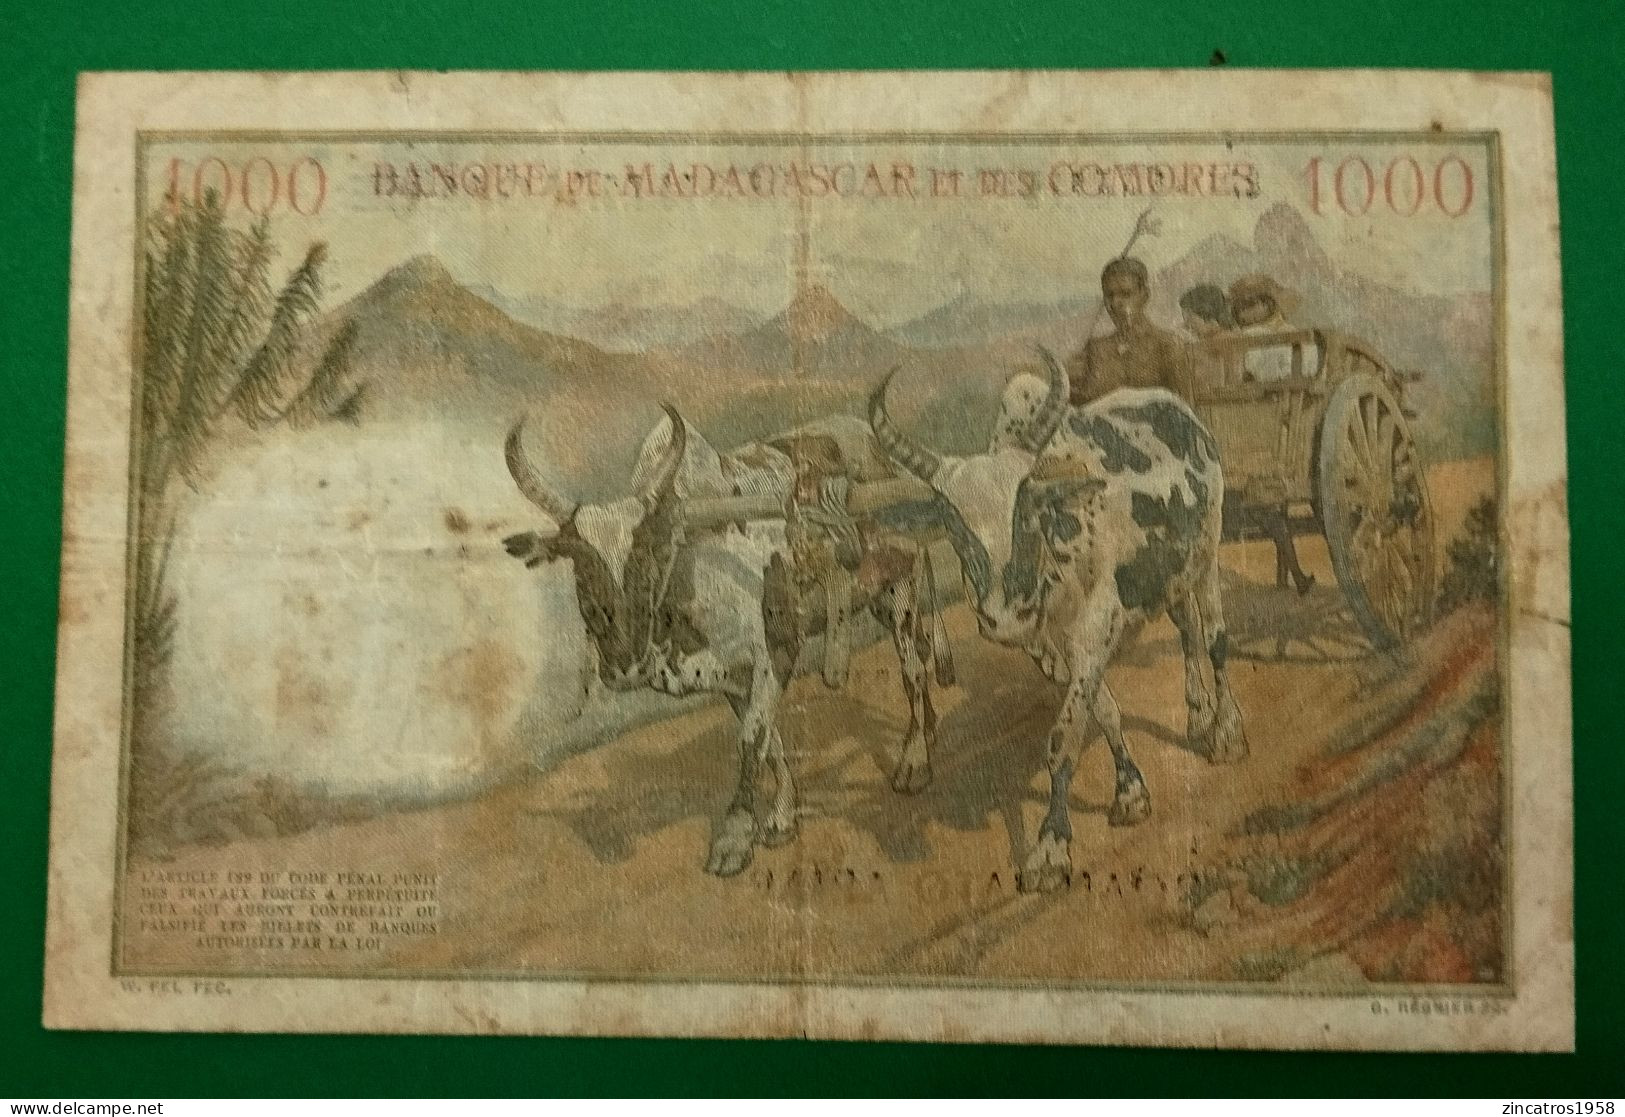 Banque Madagascar Et Comores / 1000 Francs Surchargé Madagascar 9/10/1952 P.54 / Trés Rare ++++ - Madagascar